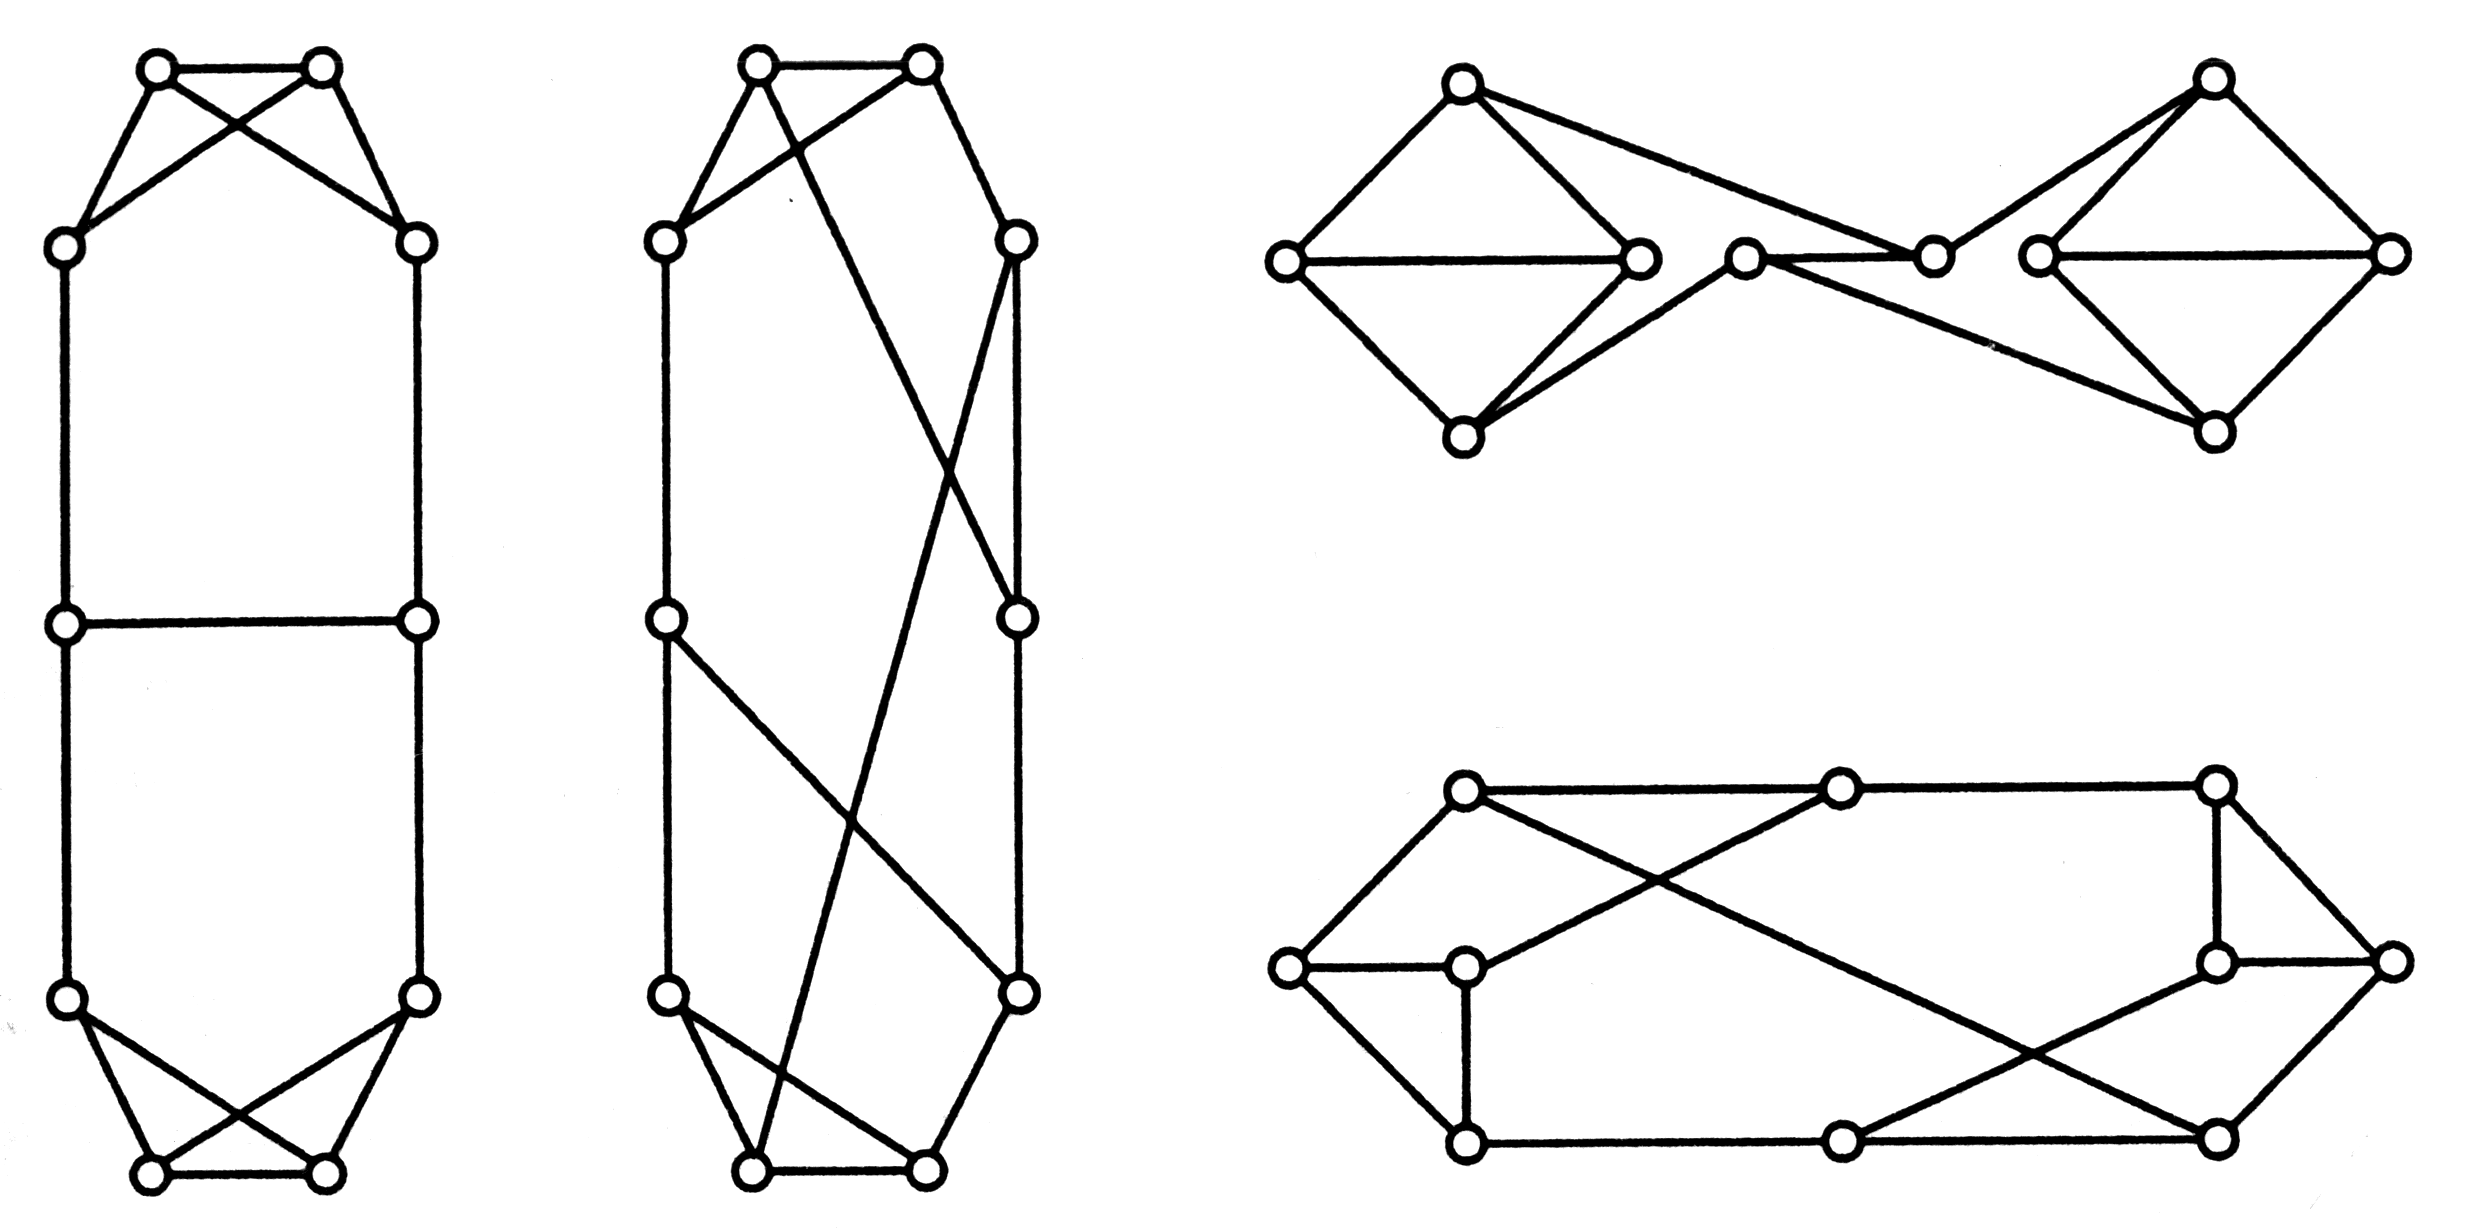 Равные графы из 5 вершин